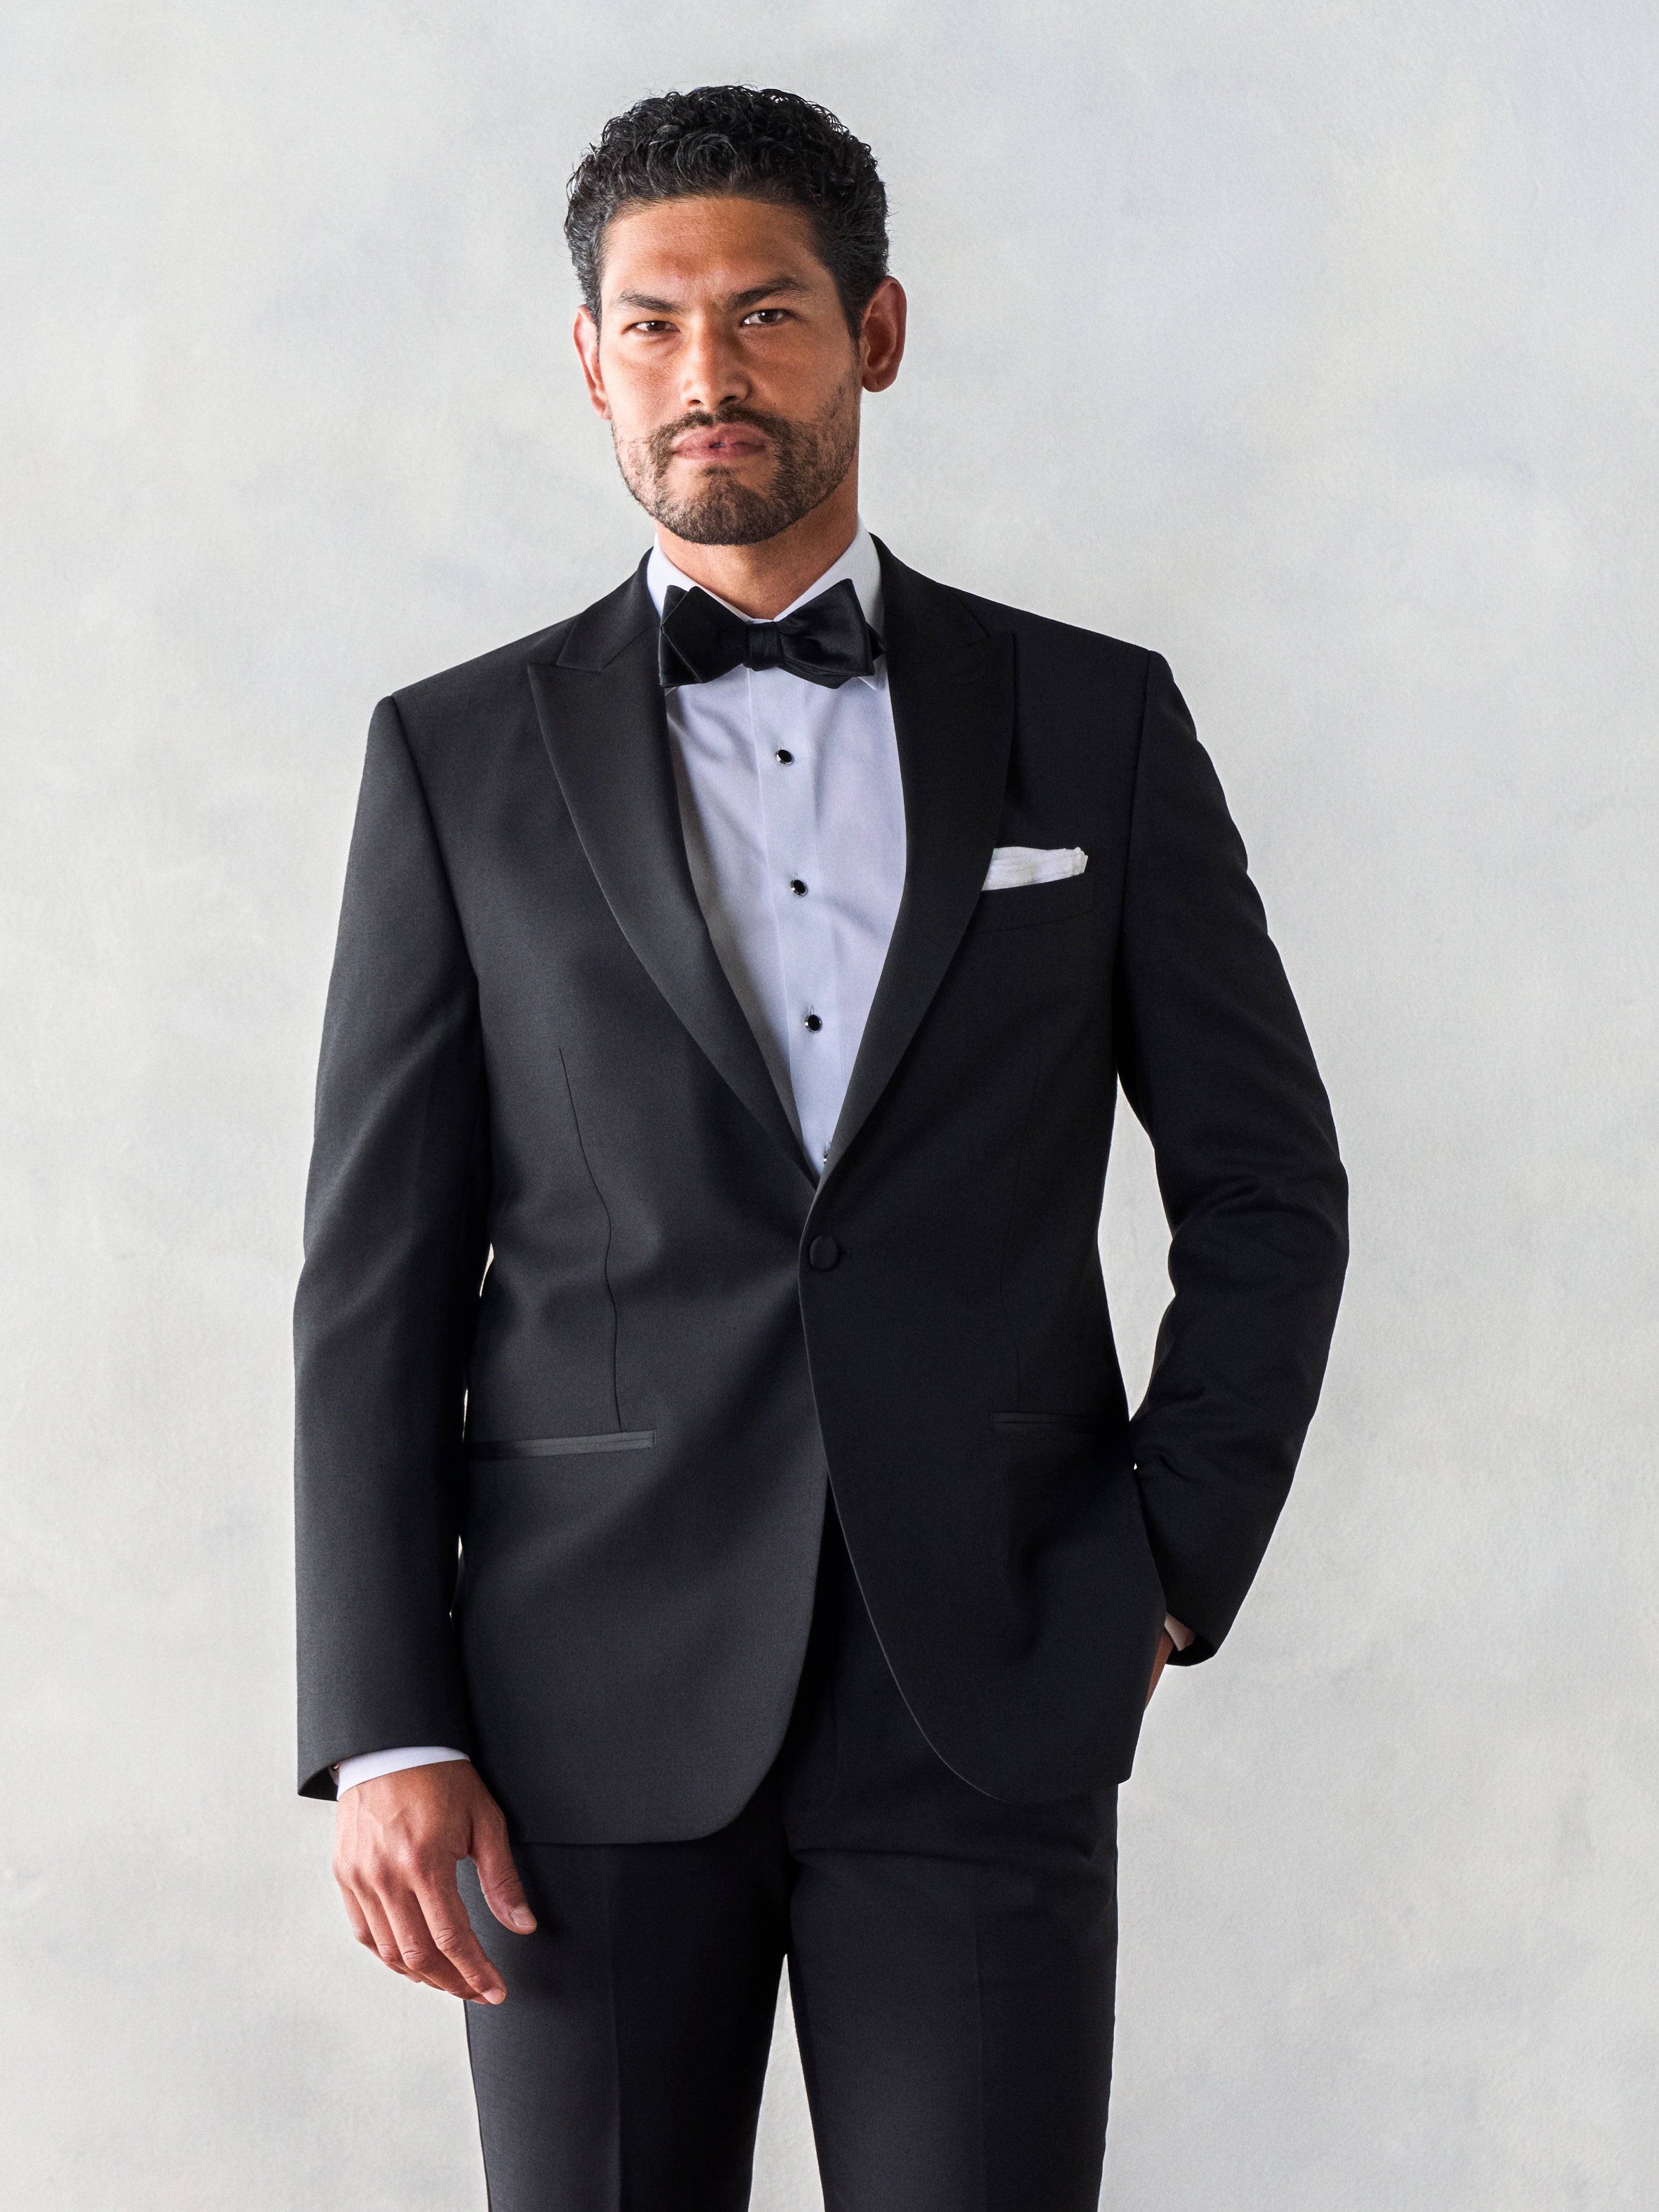 Buy Men's Black Suit Up Typography T-shirt Online at Bewakoof